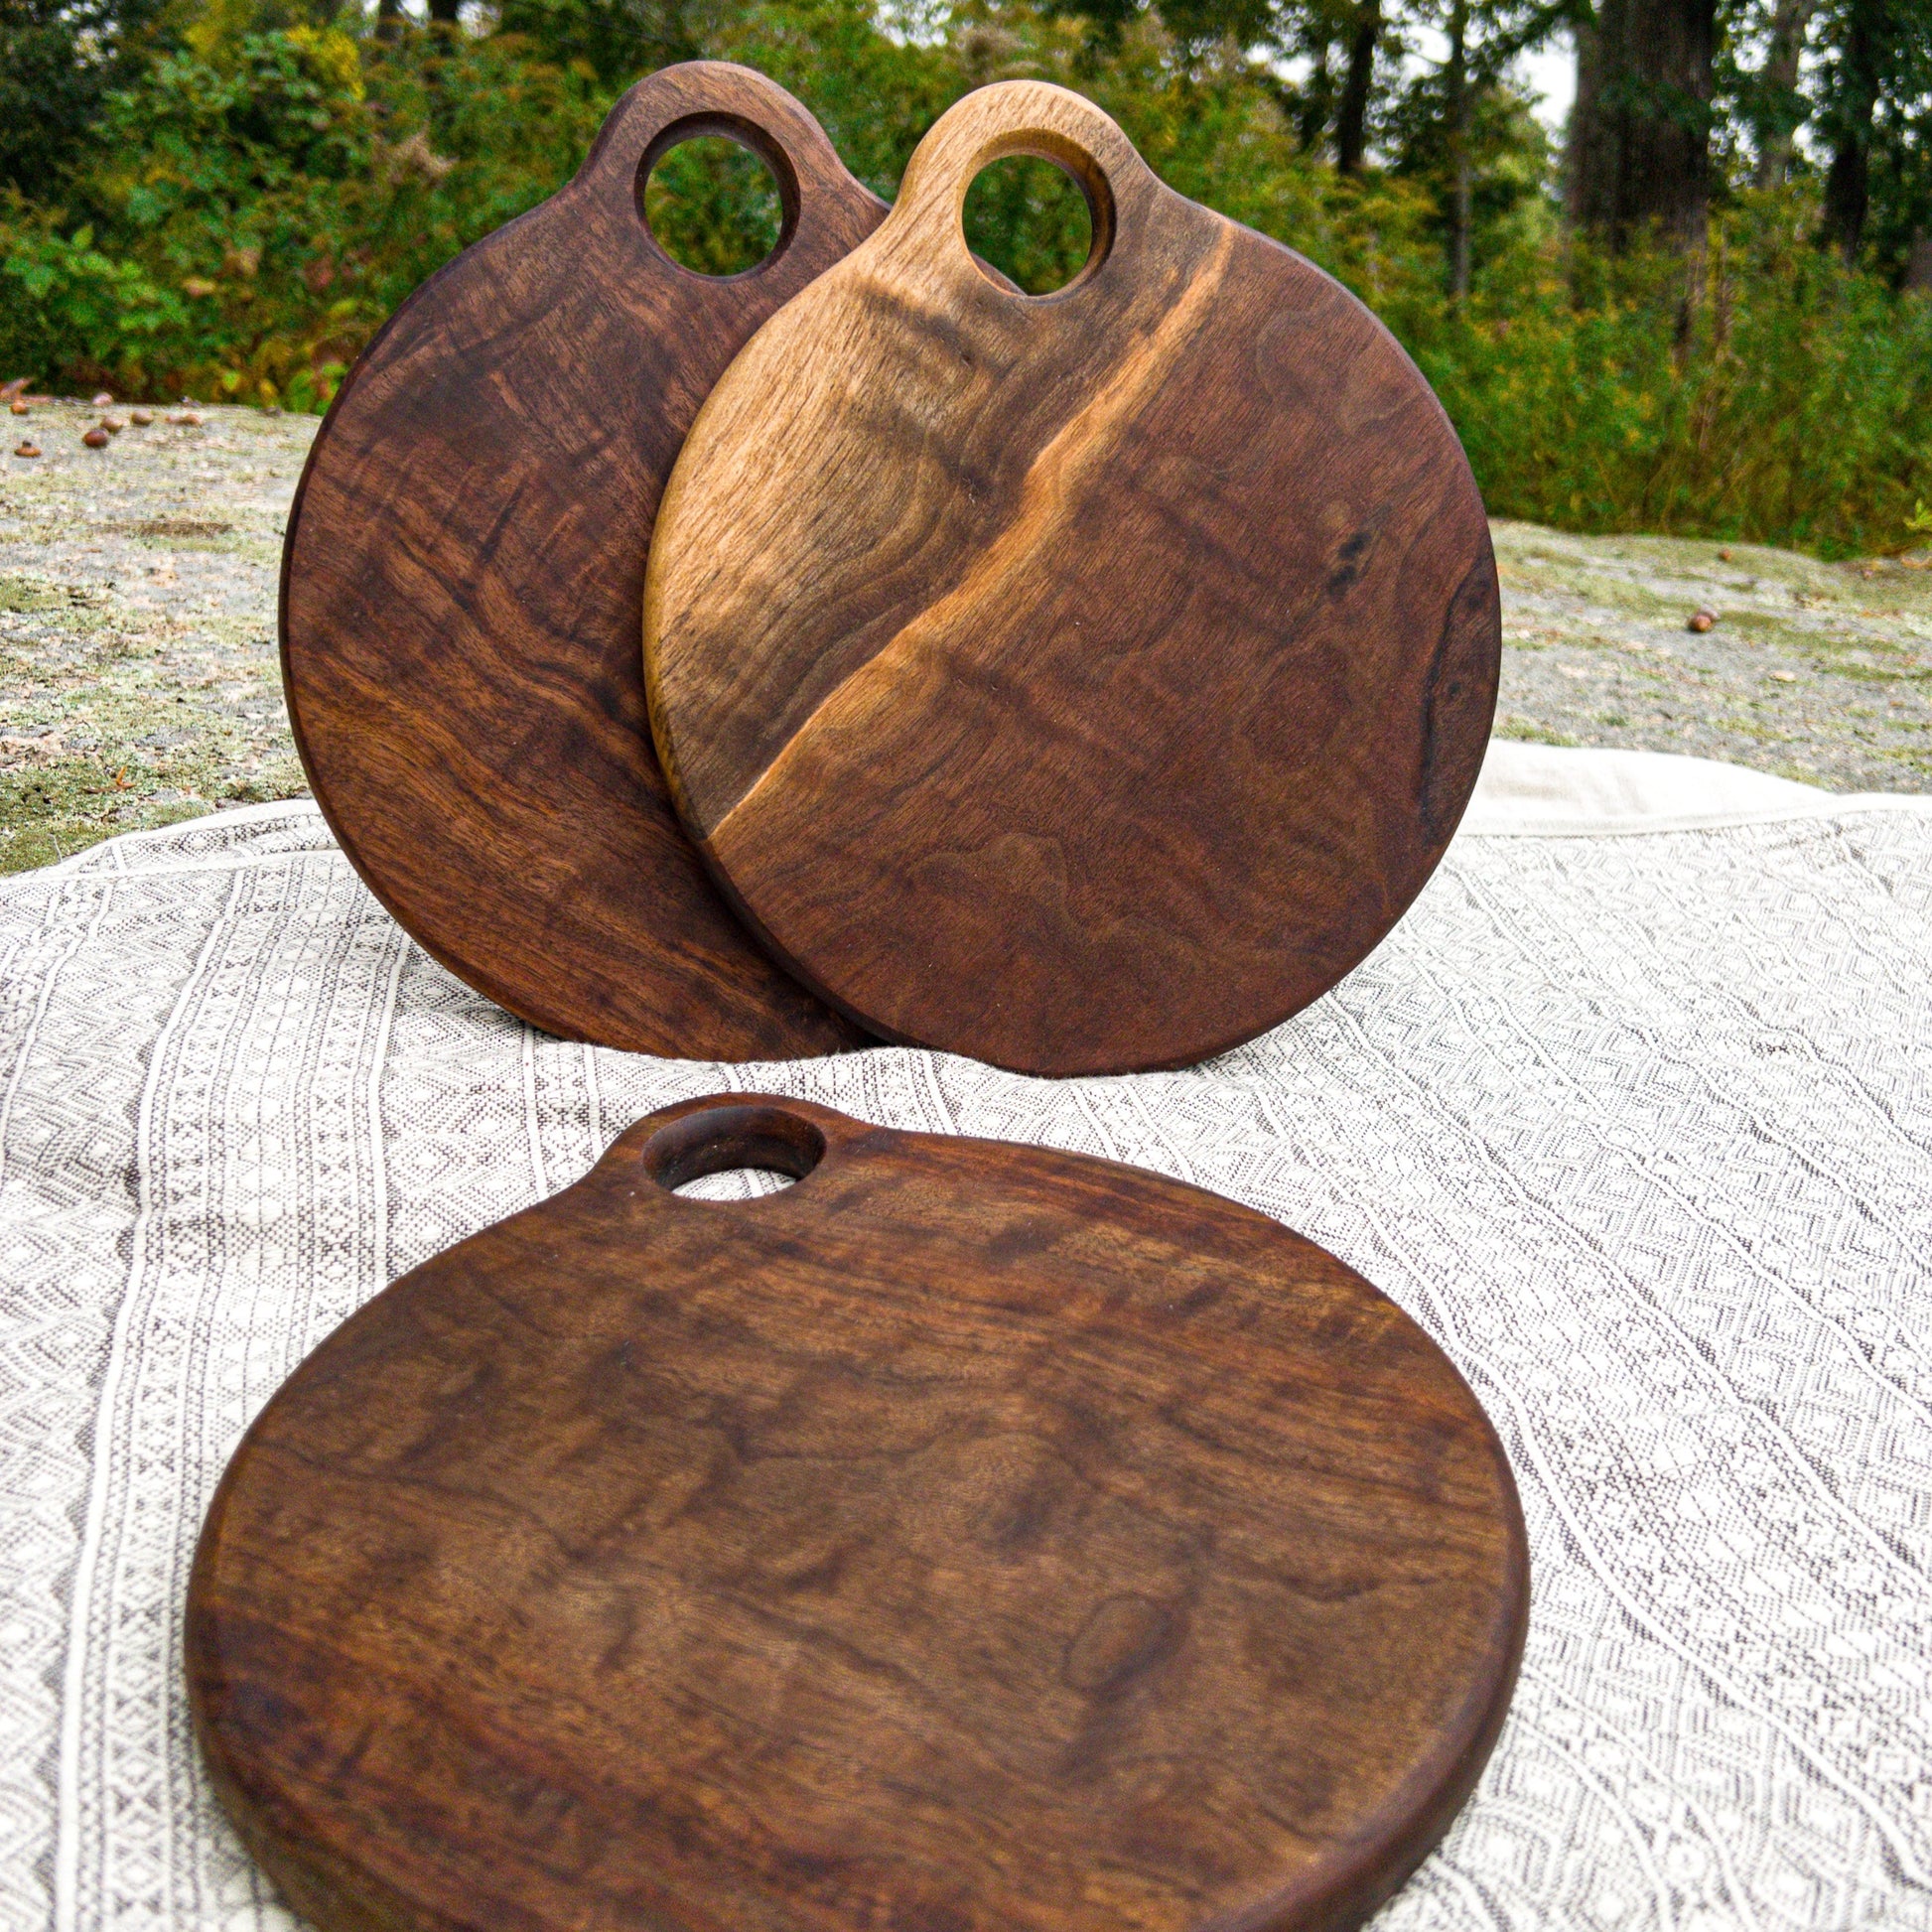 Round Walnut Wood Cutting Board